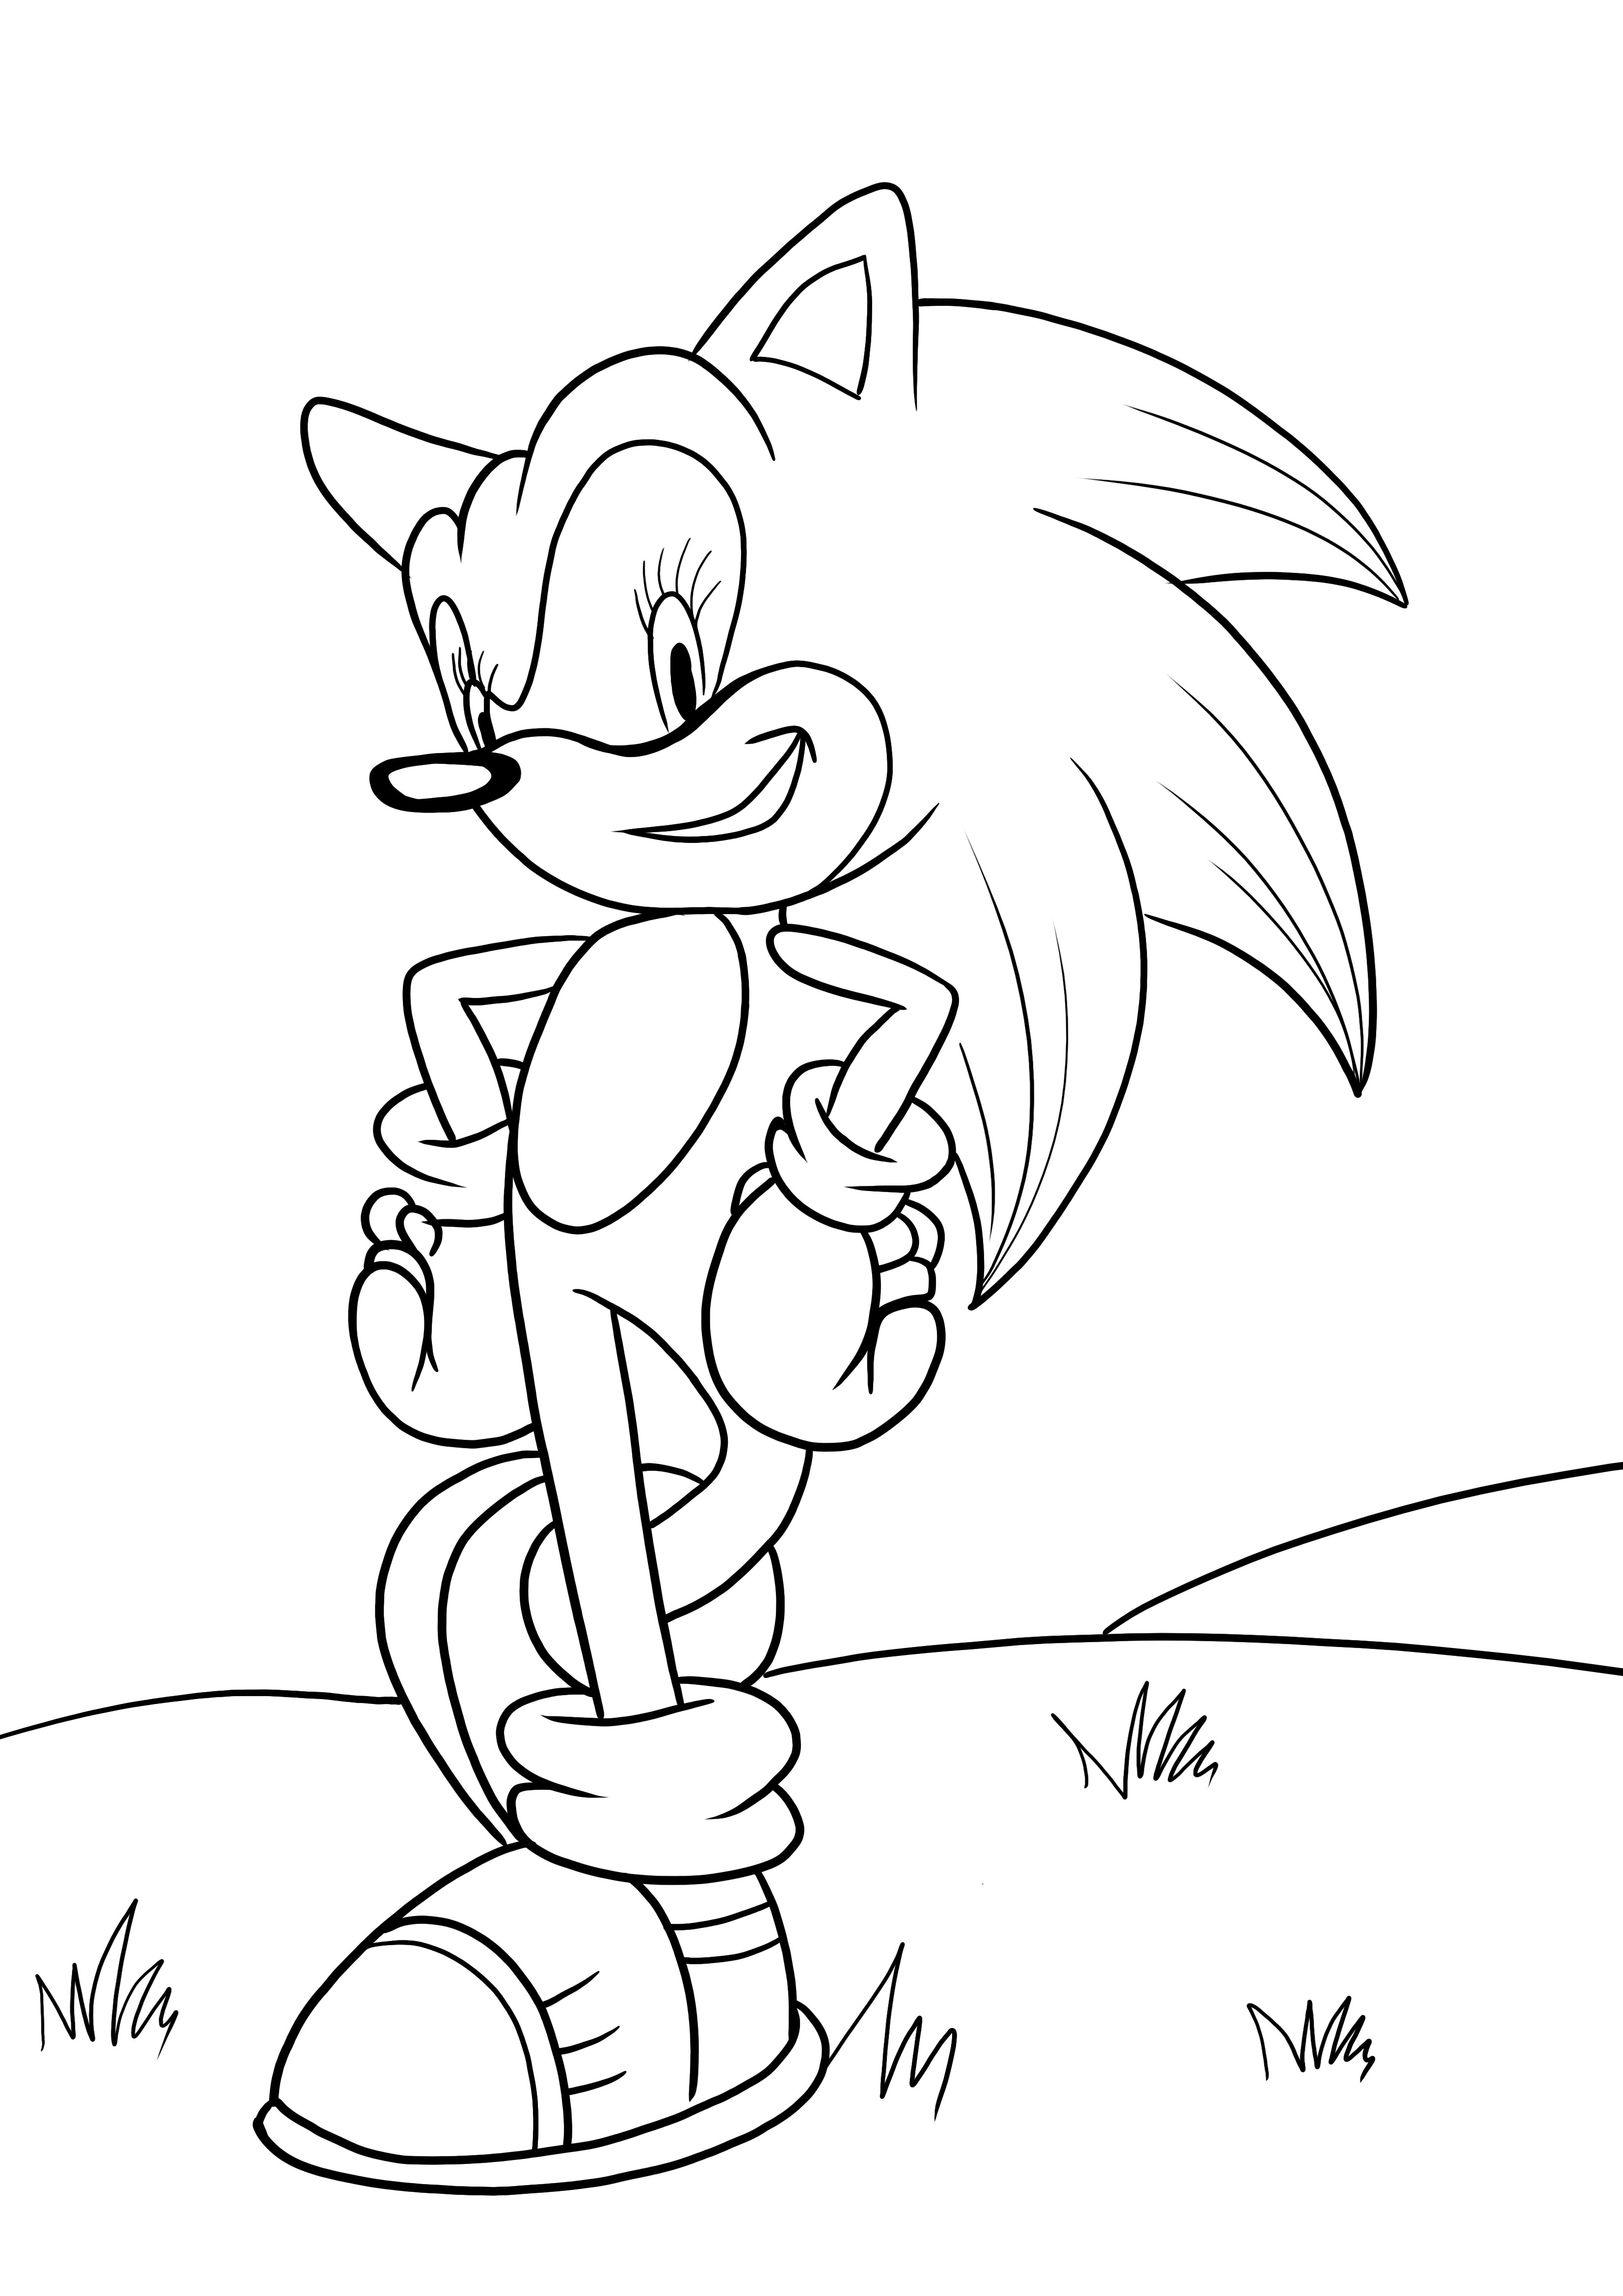 Página do Sonic para colorir e baixar de graça